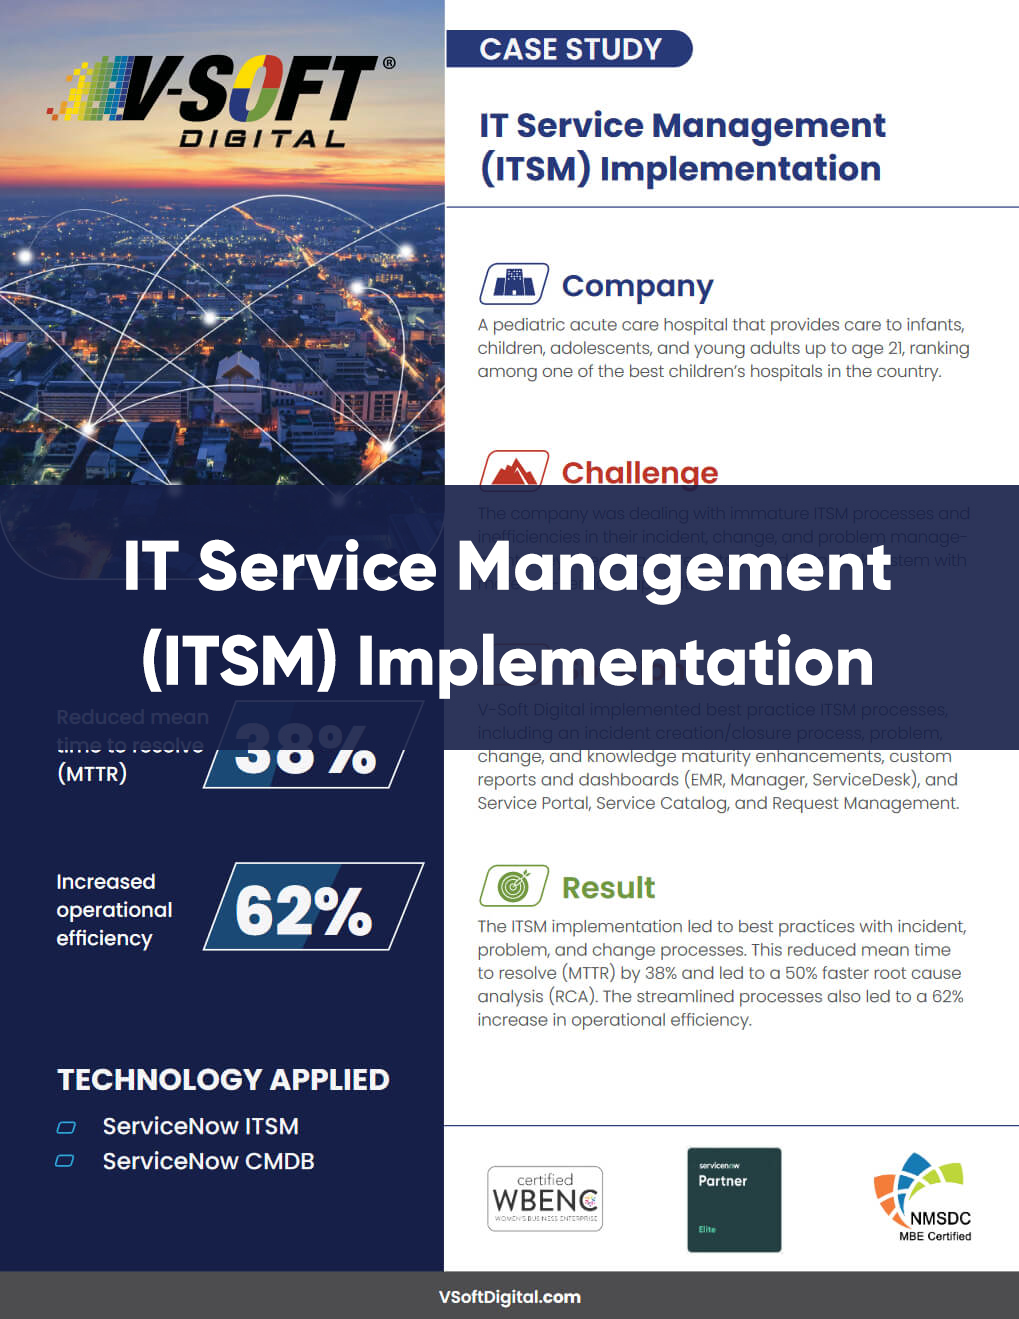 IT Service Management Implementation